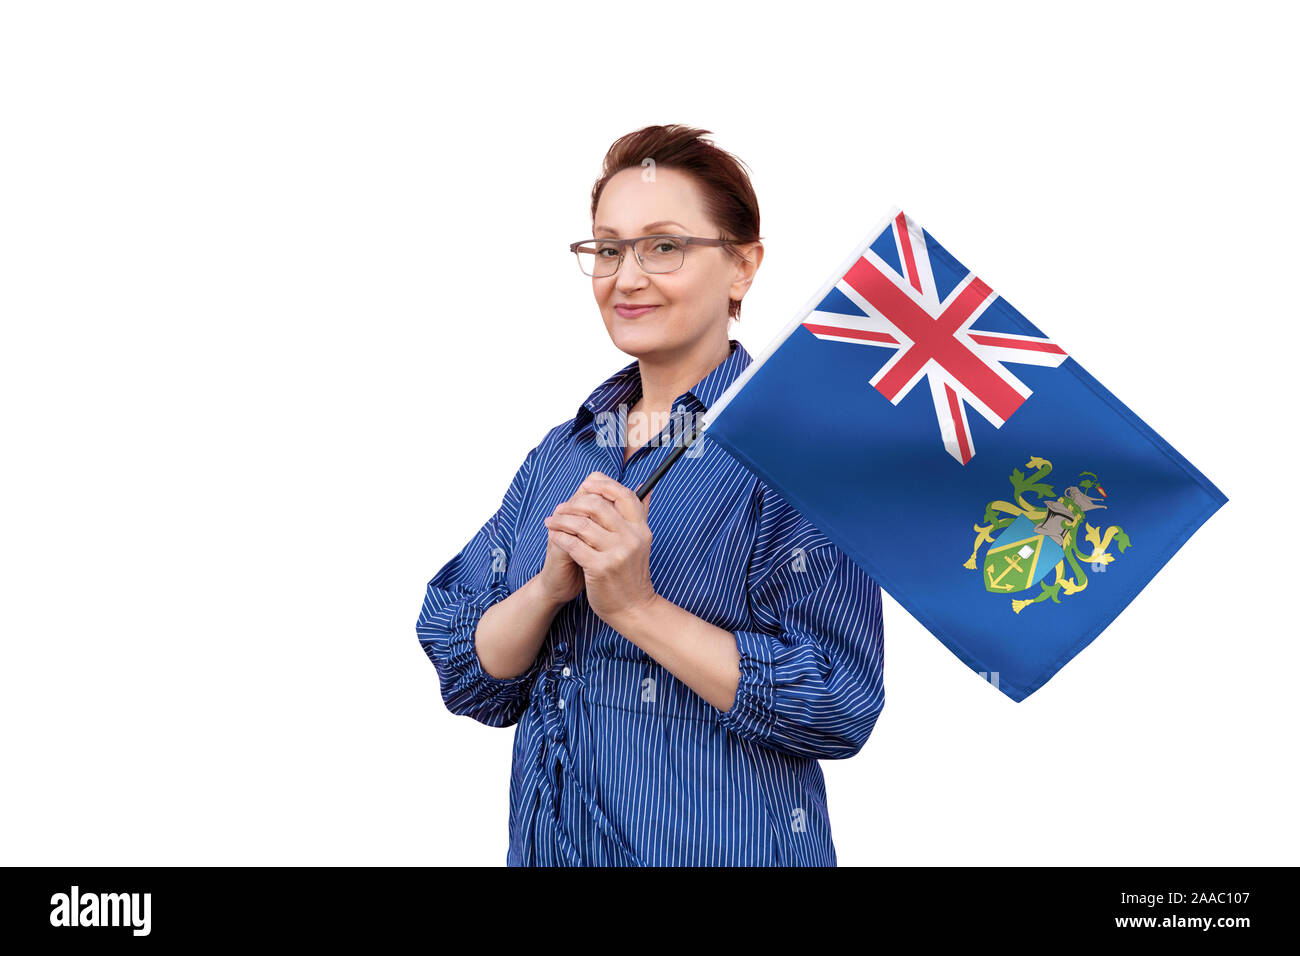 Pitcairninseln Flagge. Frau mit Flagge. Schönes Portrait der Dame im mittleren Alter 40 50 Jahre alt, eine große Flagge mit weissem Hintergrund. Stockfoto